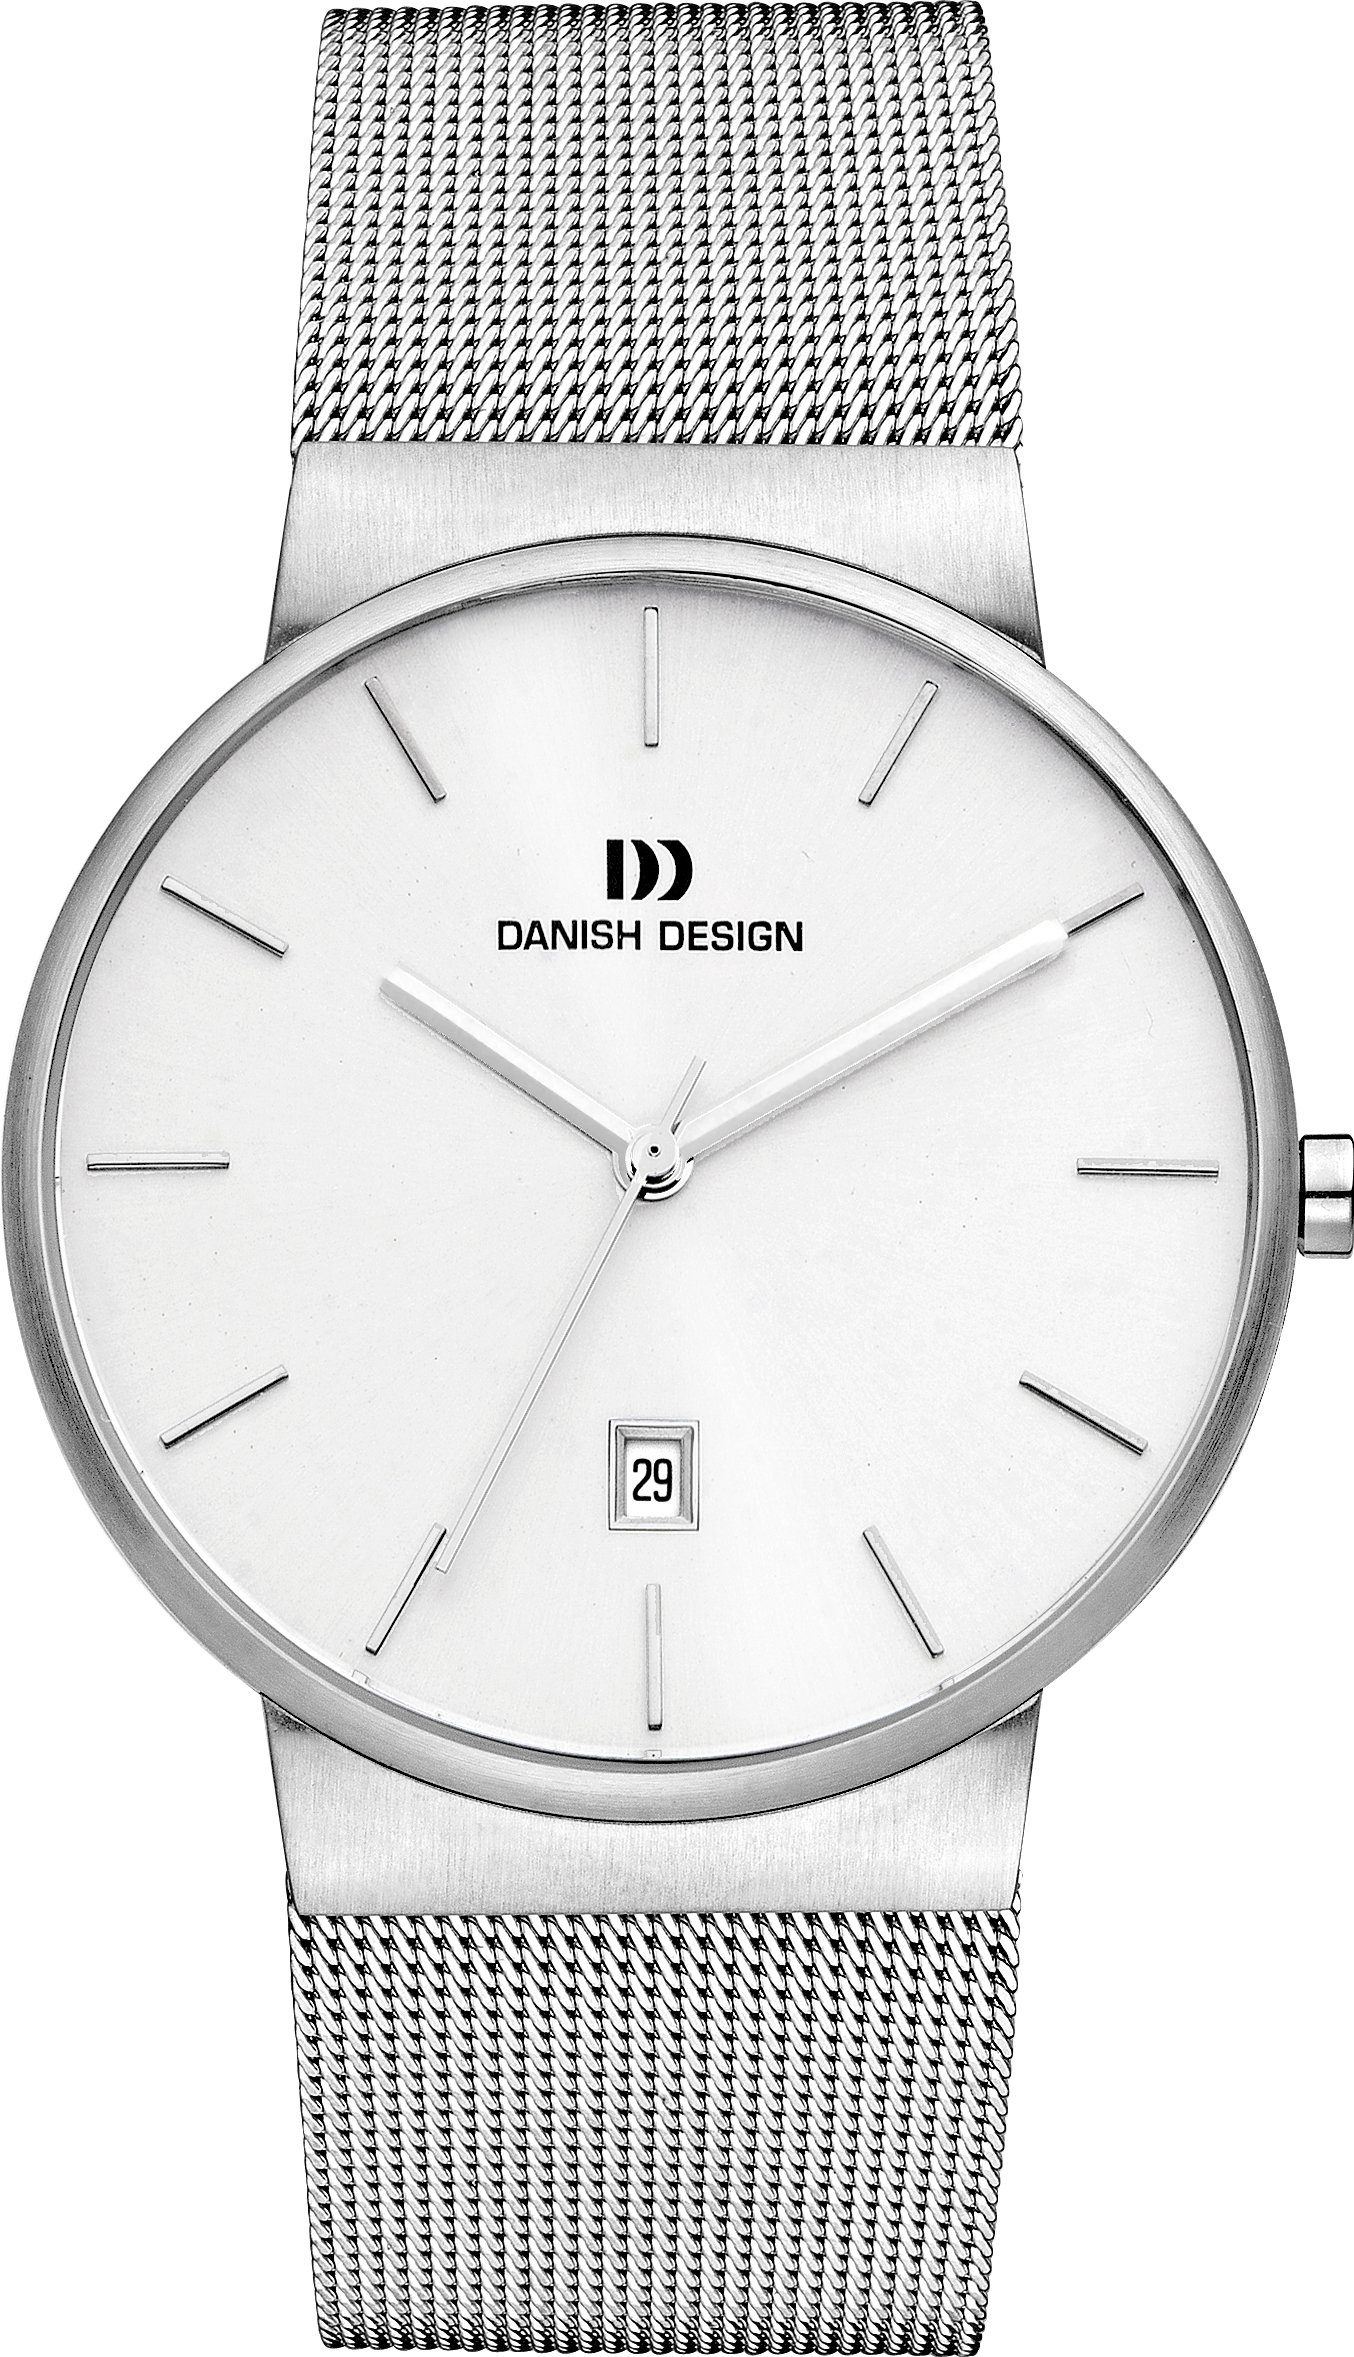 Danish Design Quarzuhr Designuhr Herren TAGE mit Datum 40mm, Datum bei 6 Uhr